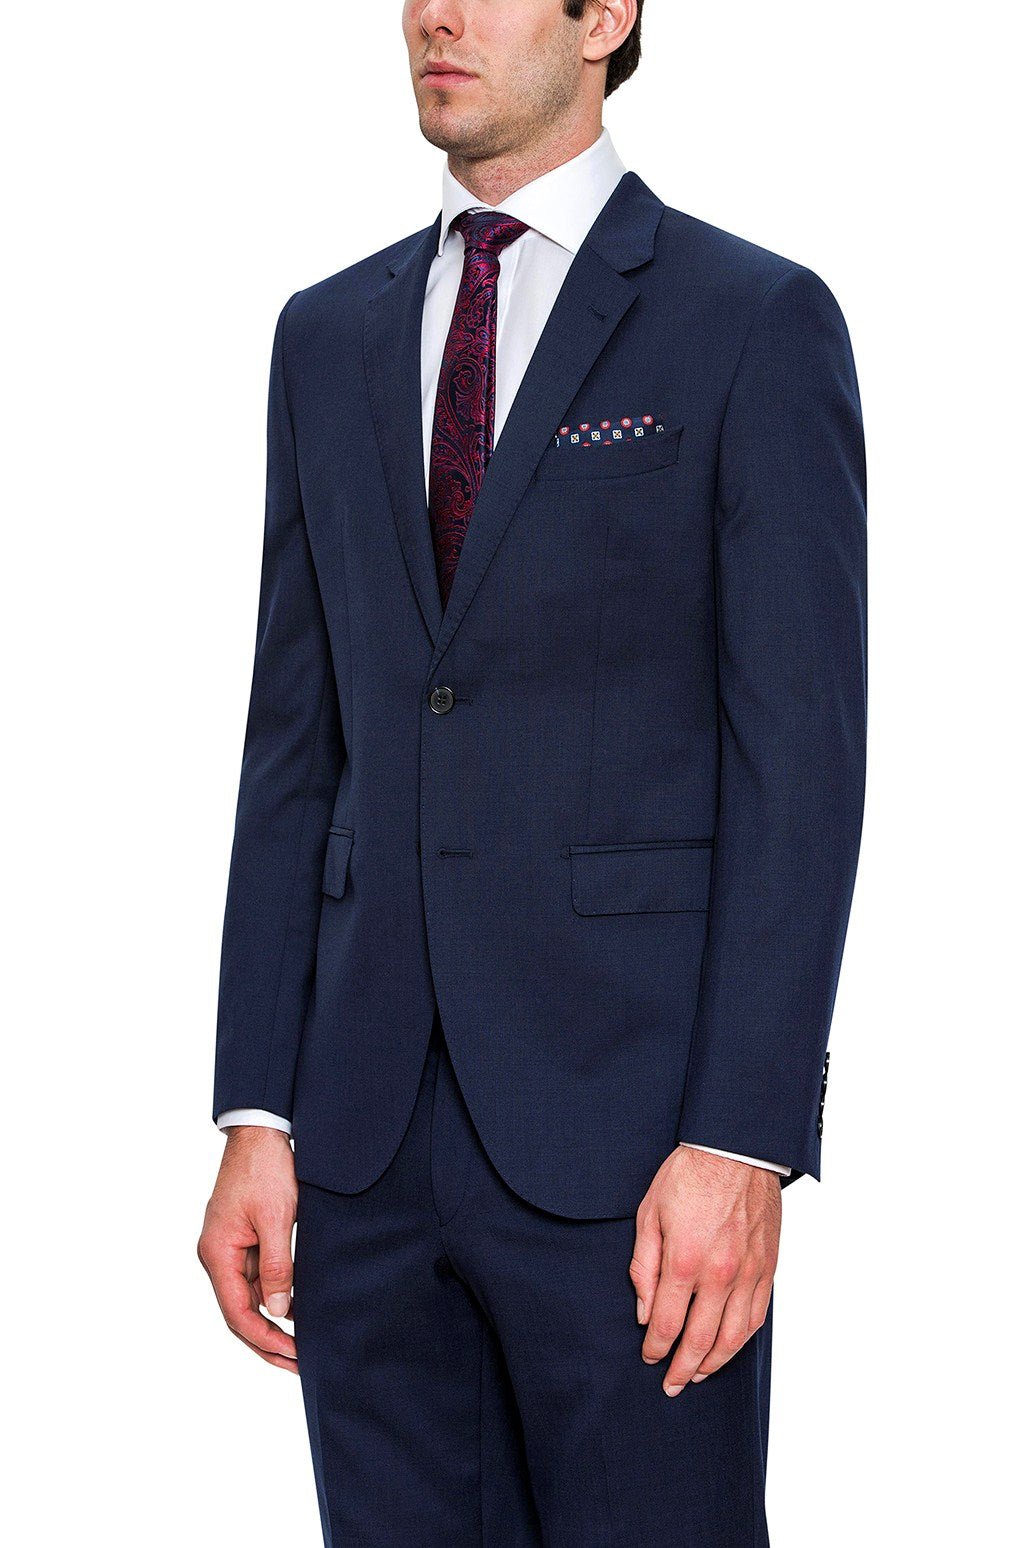 Cambridge F2800 Range Suit - Thomson's Suits Ltd